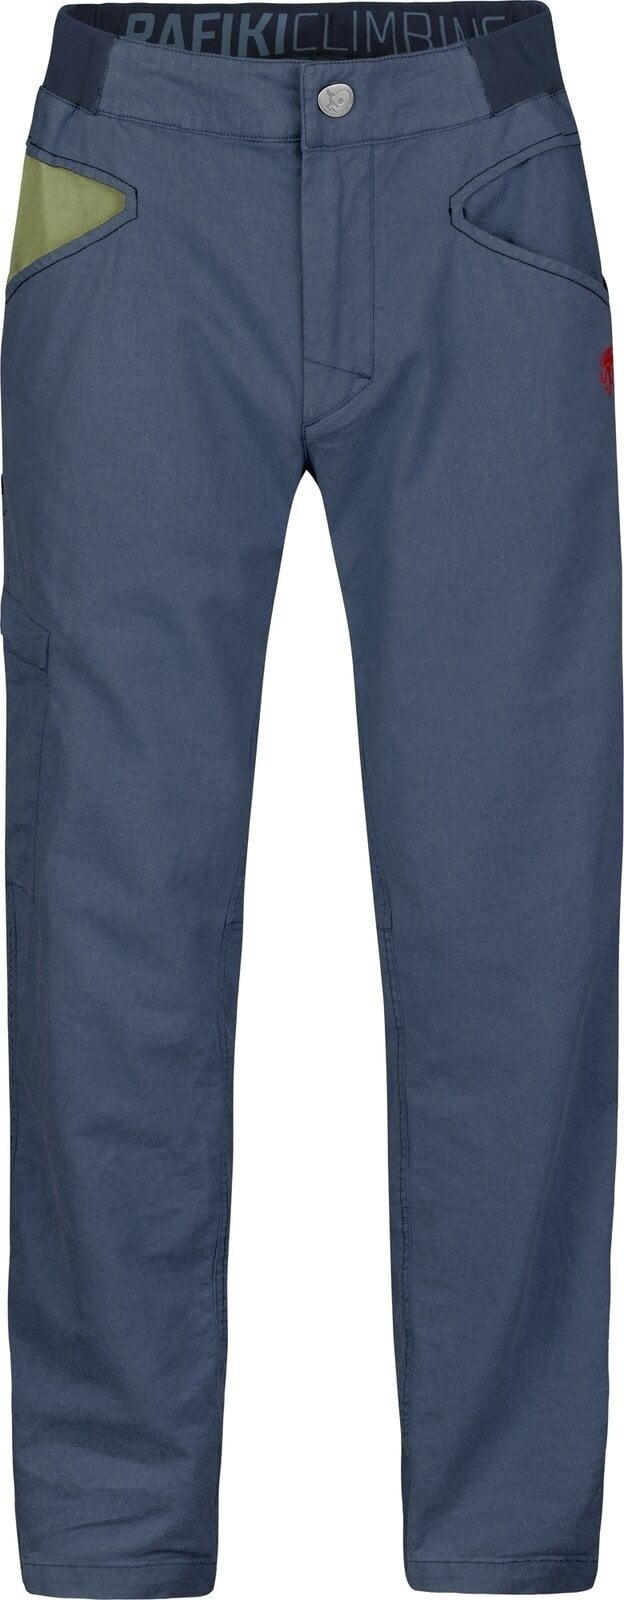 Pantalons outdoor Rafiki Grip Man Pants India Ink 2XL Pantalons outdoor